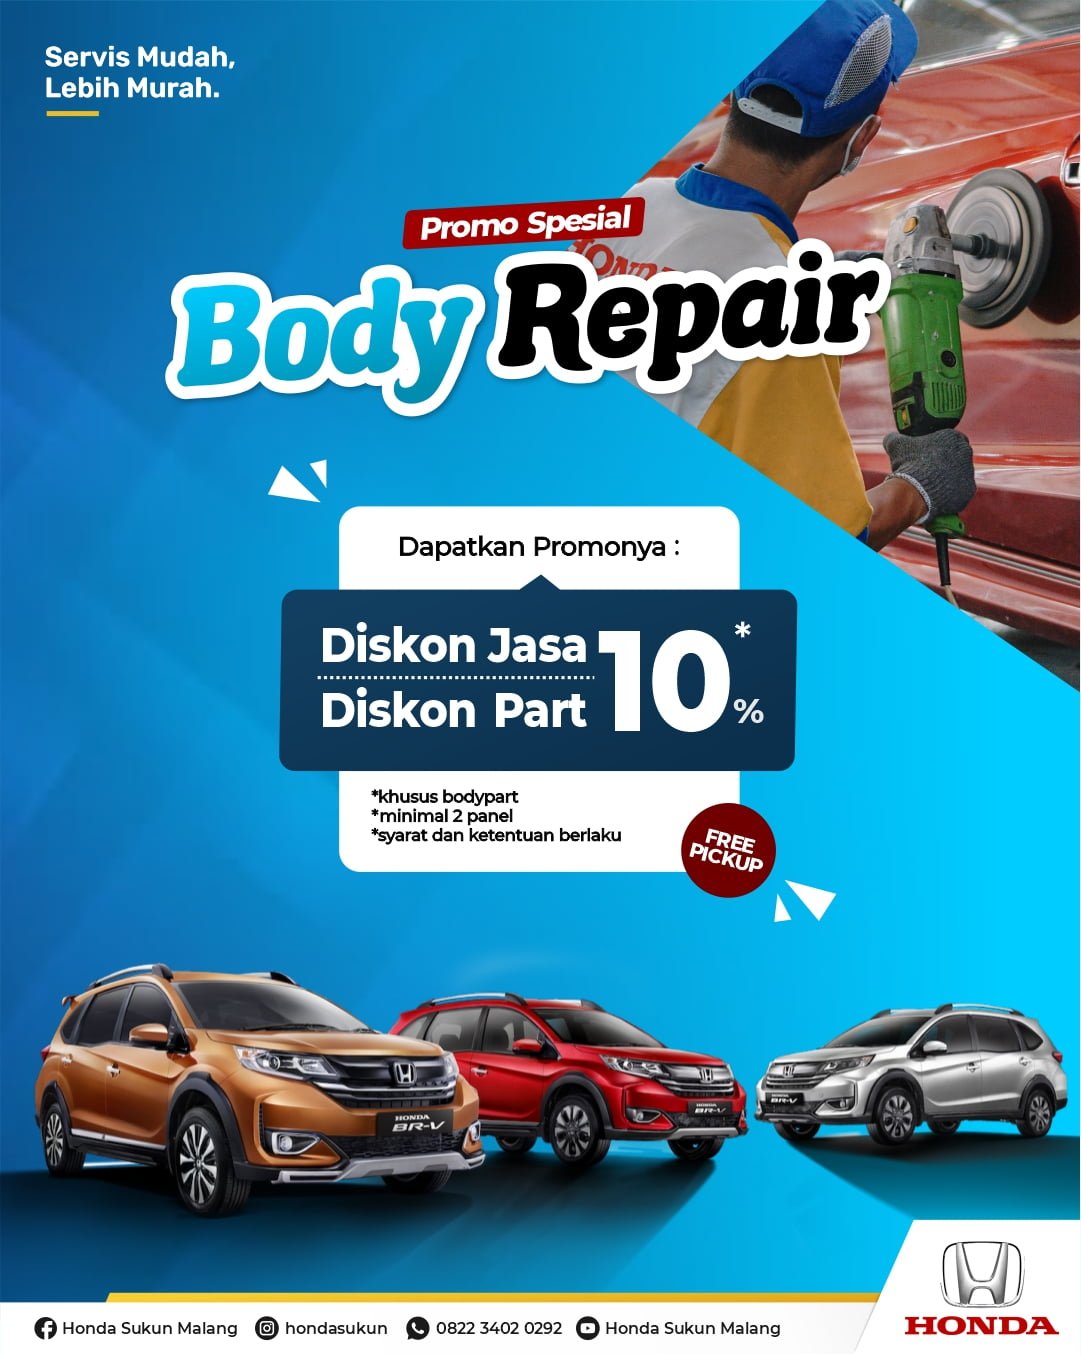 Promo Service Body Repair Honda Malang